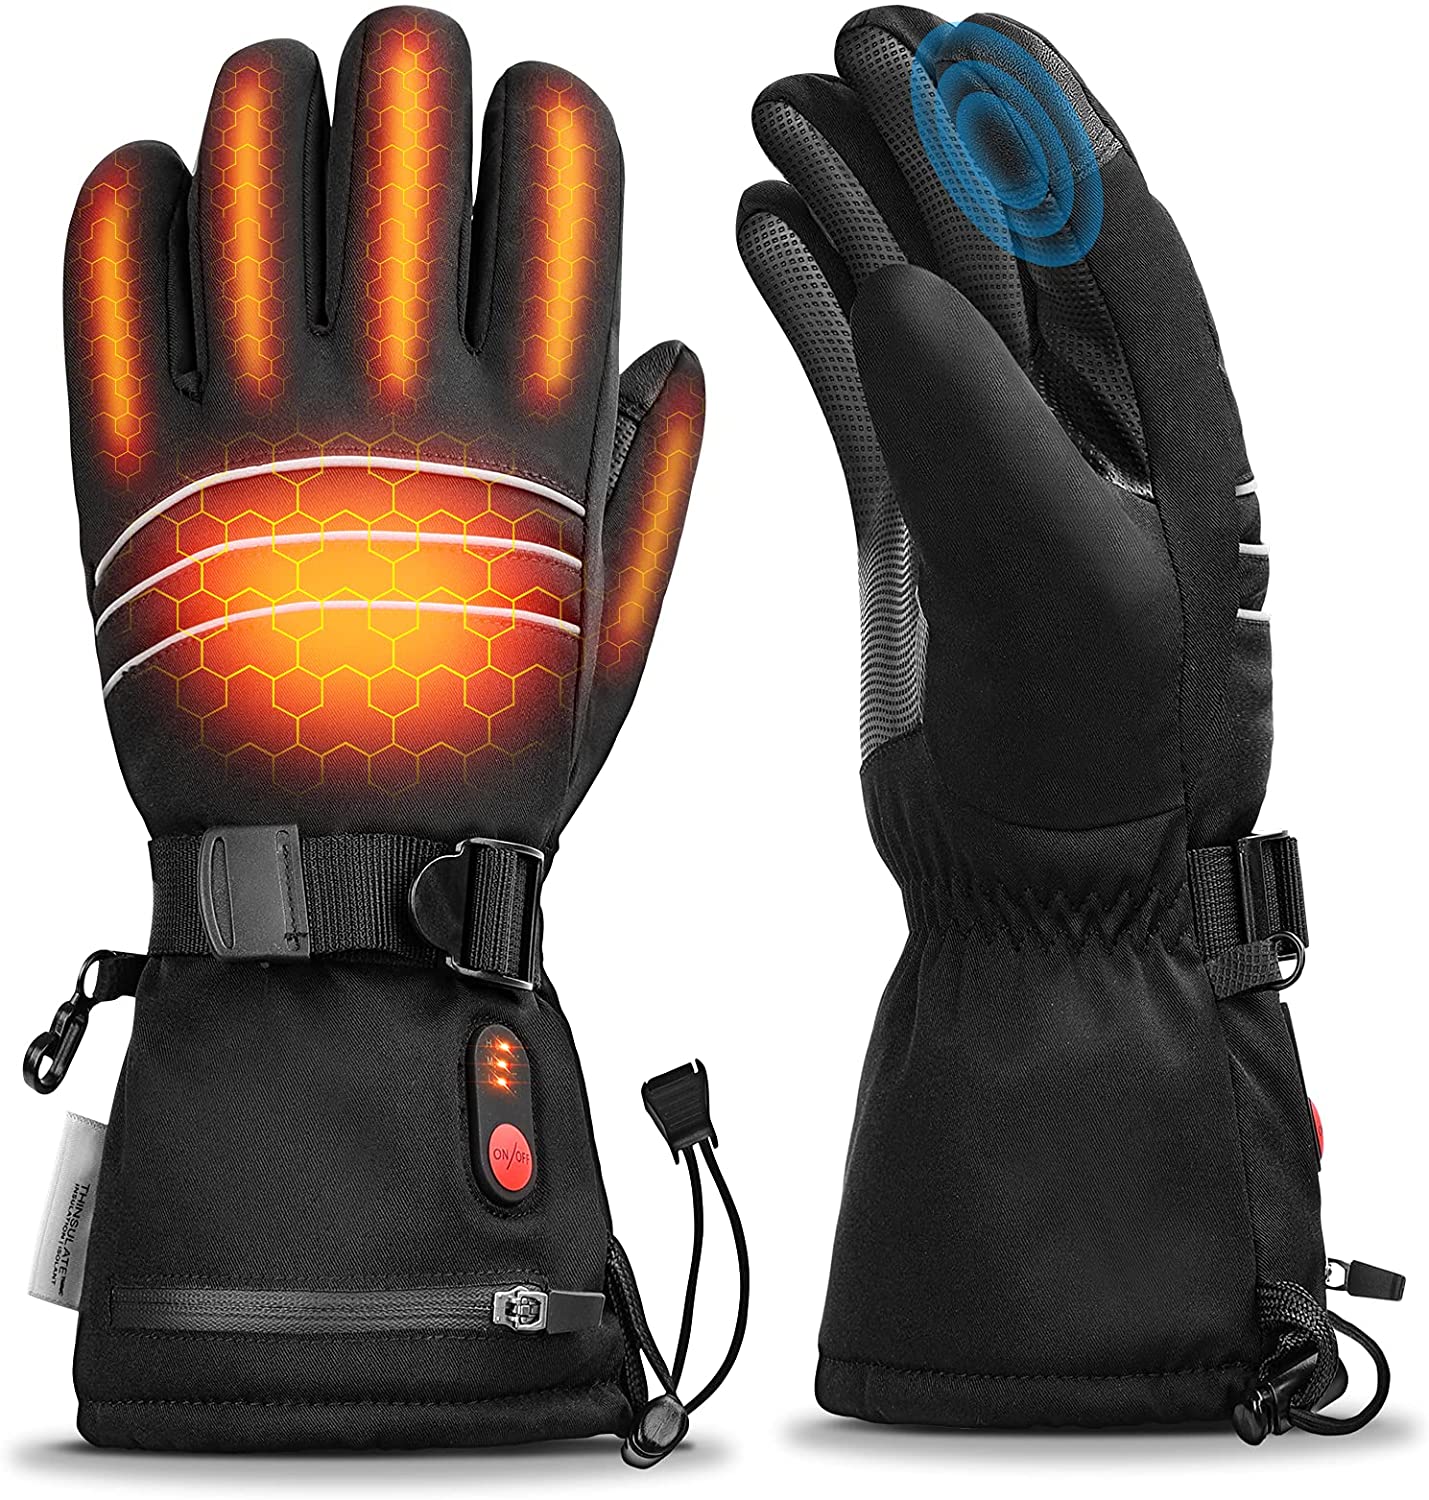 Bild zu CoMokin beheizbare Handschuhe mit drei Wärmestufen (inkl. Akkus) für 45,49€